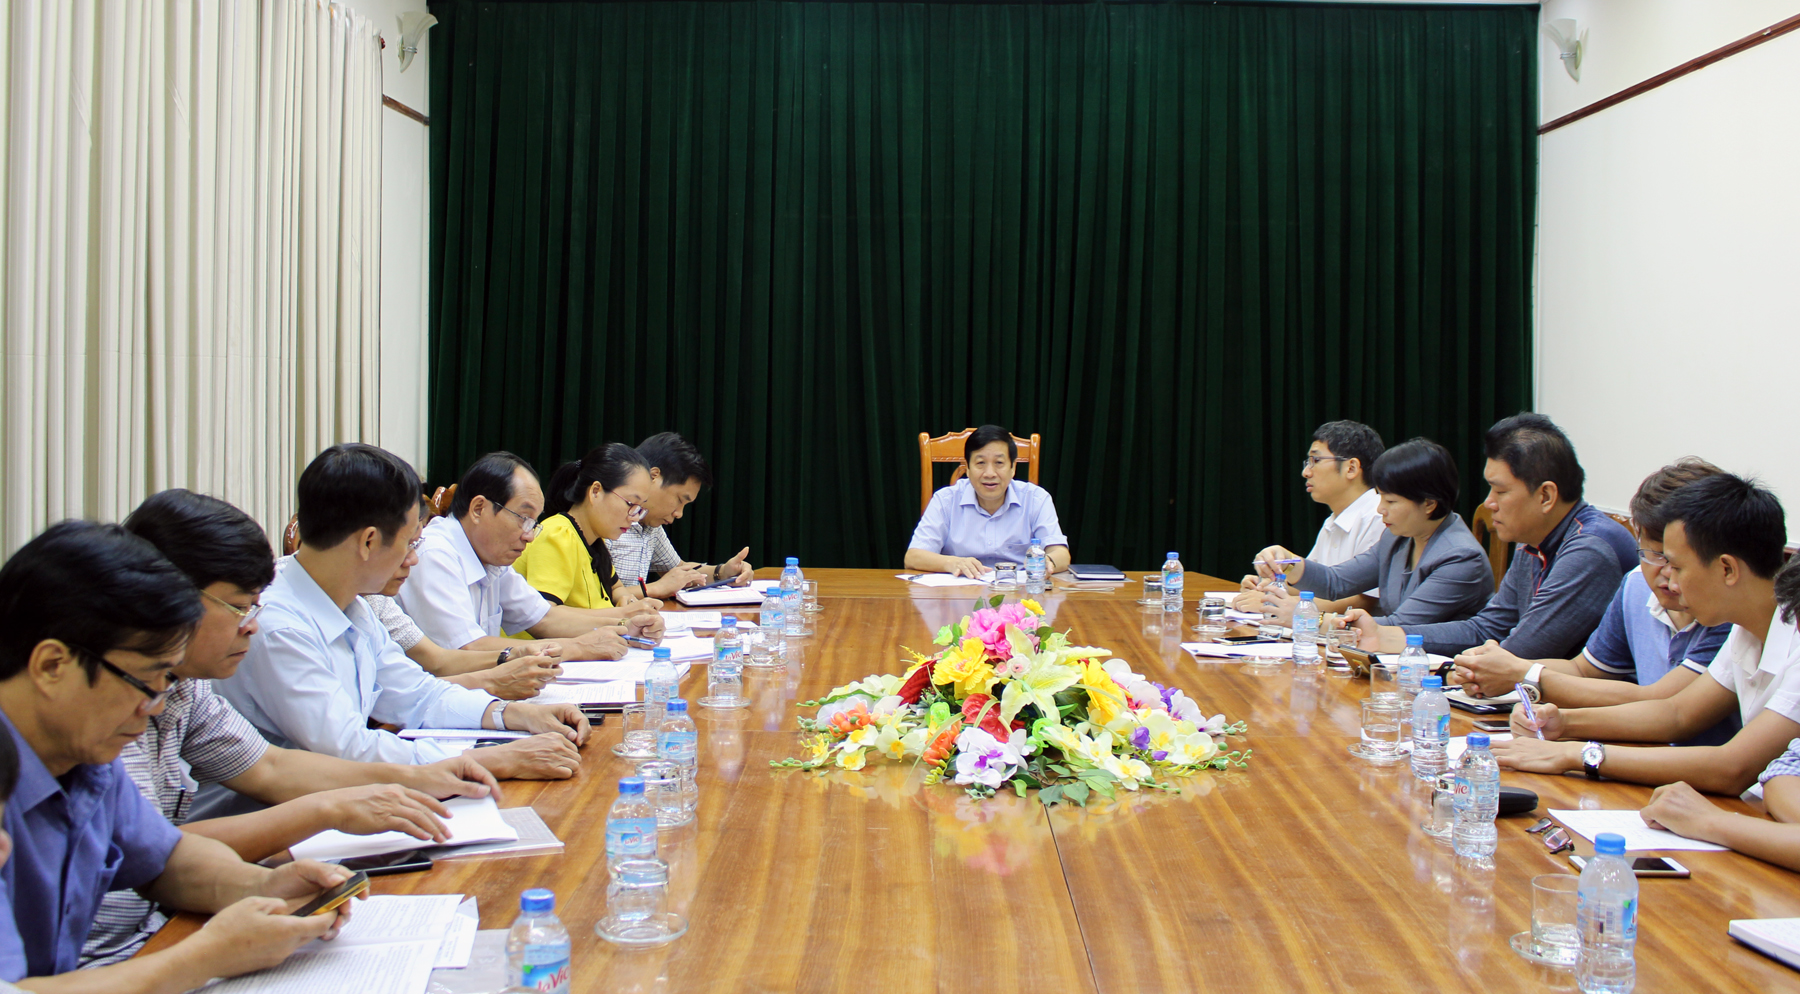 Đồng chí Nguyễn Xuân Quang, Ủy viên Ban Thường vụ Tỉnh ủy, Phó Chủ tịch Thường trực UBND tỉnh phát biểu kết luận buổi làm việc.